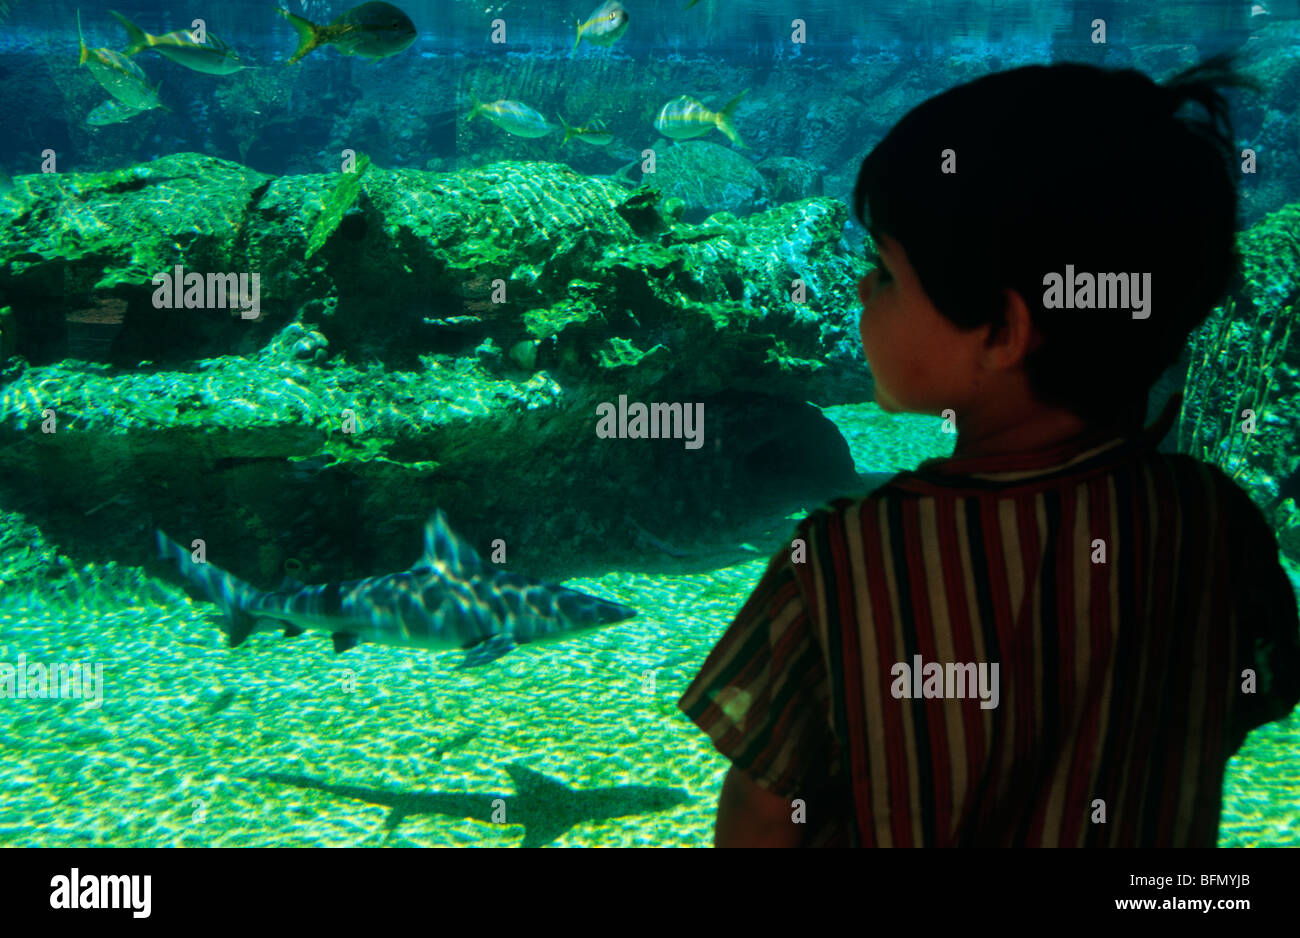 Las Islas Caimán, las Islas Caimán, Boatswain's Beach. Un niño mira un tanque "depredador" el acuario en la Playa Boatswain parque marino.(MR) Foto de stock